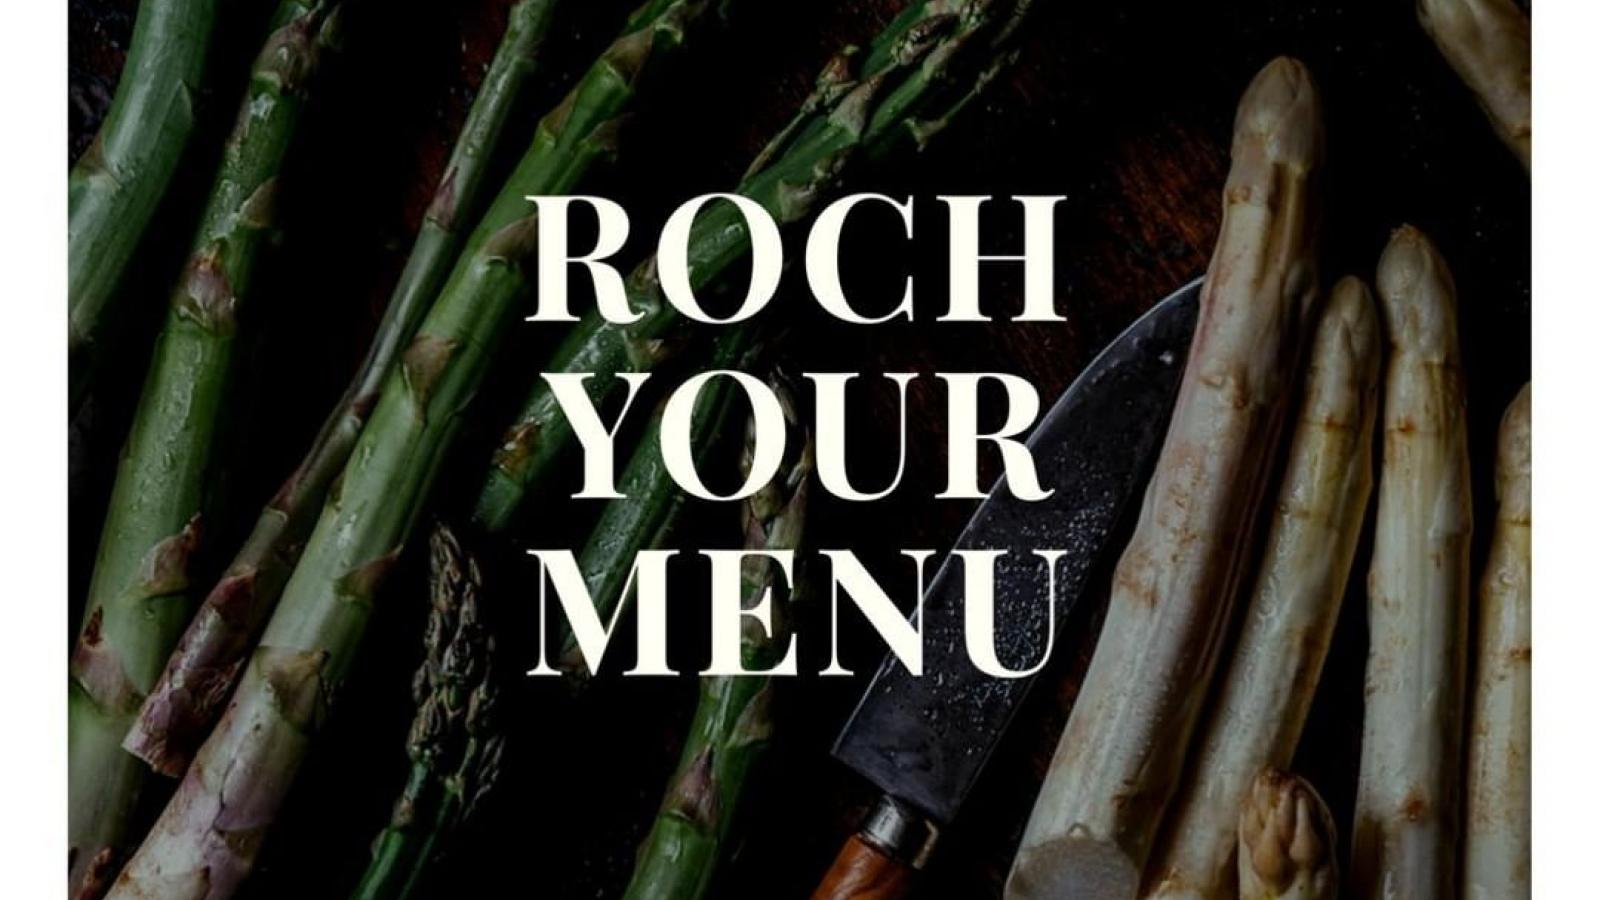 Roch your menu!